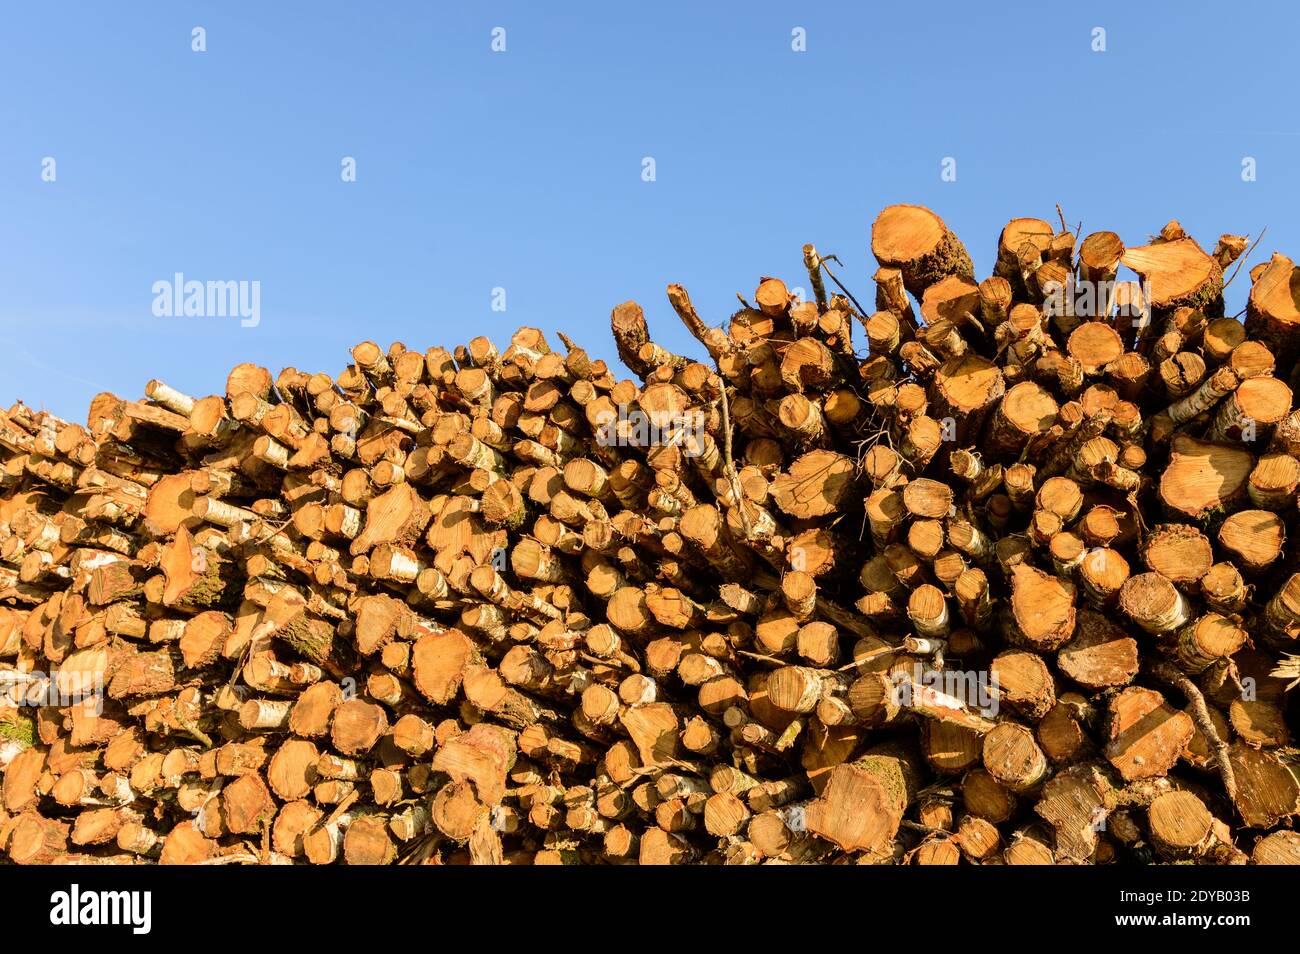 Haufen mit Baumstämmen nach dem Holzeinschlag und Entwaldung in der Natur Beibehalten Stockfoto